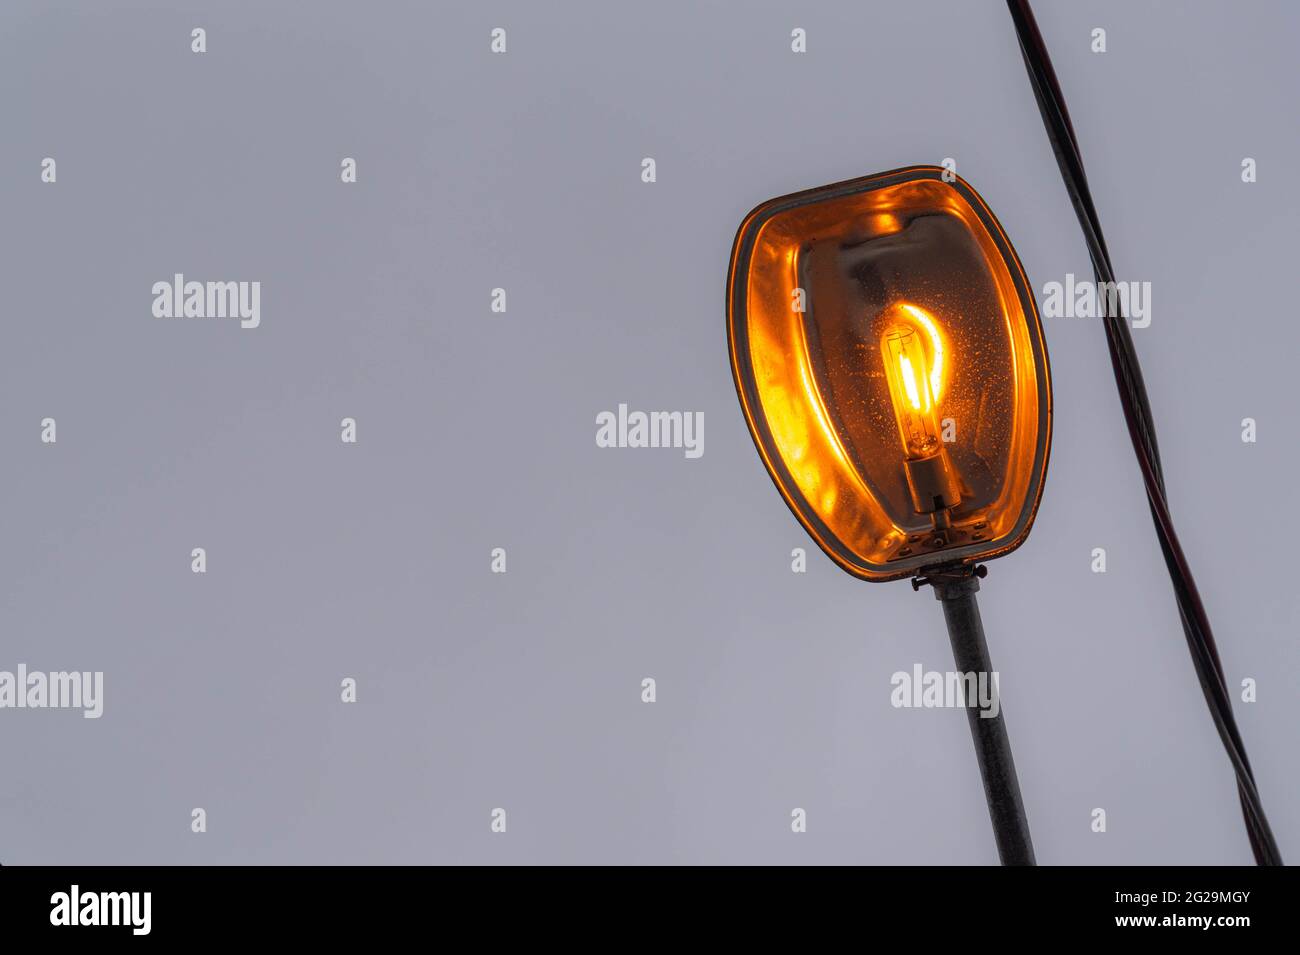 Lampe an für öffentliche Beleuchtung. Städtische Beleuchtungsinfrastruktur. Glühlampe. Stockfoto